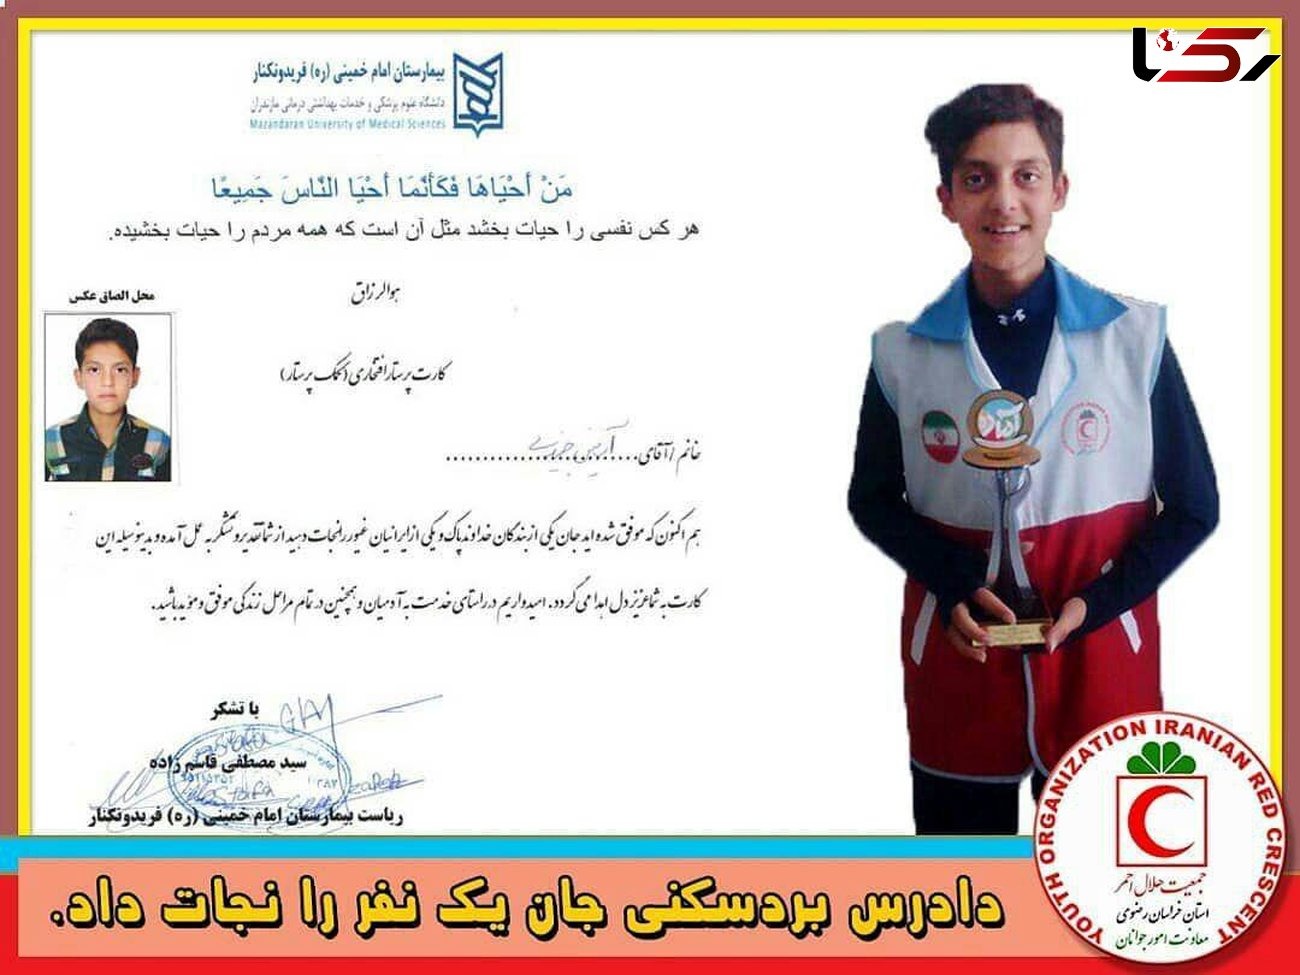  اهدای کارت پرستار افتخاری به دانش آموز دادرس بردسکنی / جان یک نفر را نجات داد + عکس